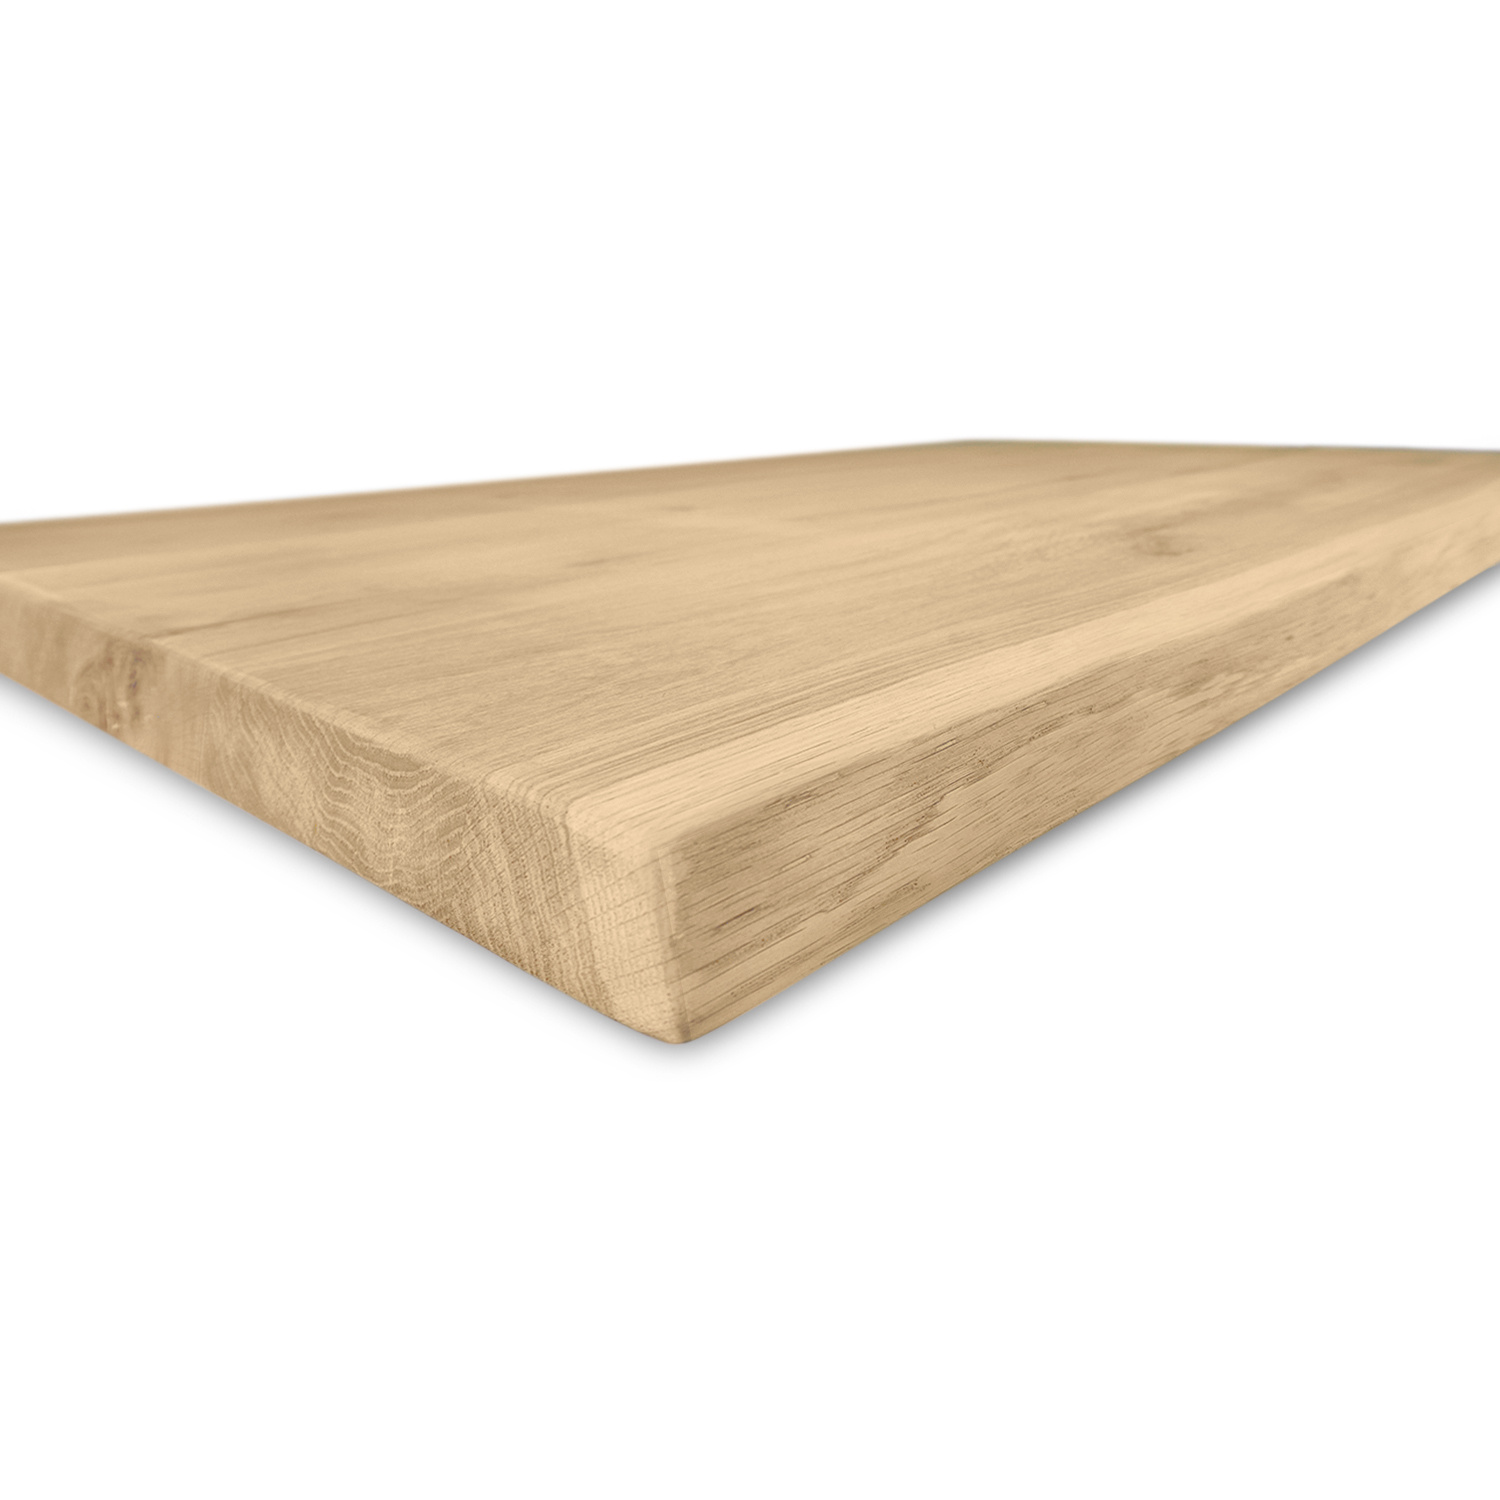  Tischplatte Wildeiche - Baumkante - nach Maß - 4 cm dick (1-Schicht) - XXL Lamellen (14-20 cm breit) - Asteiche (rustikal) mit natürlichen Baumkant - verleimt & künstlich getrocknet (HF 8-12%) - 40-105x80-300 cm